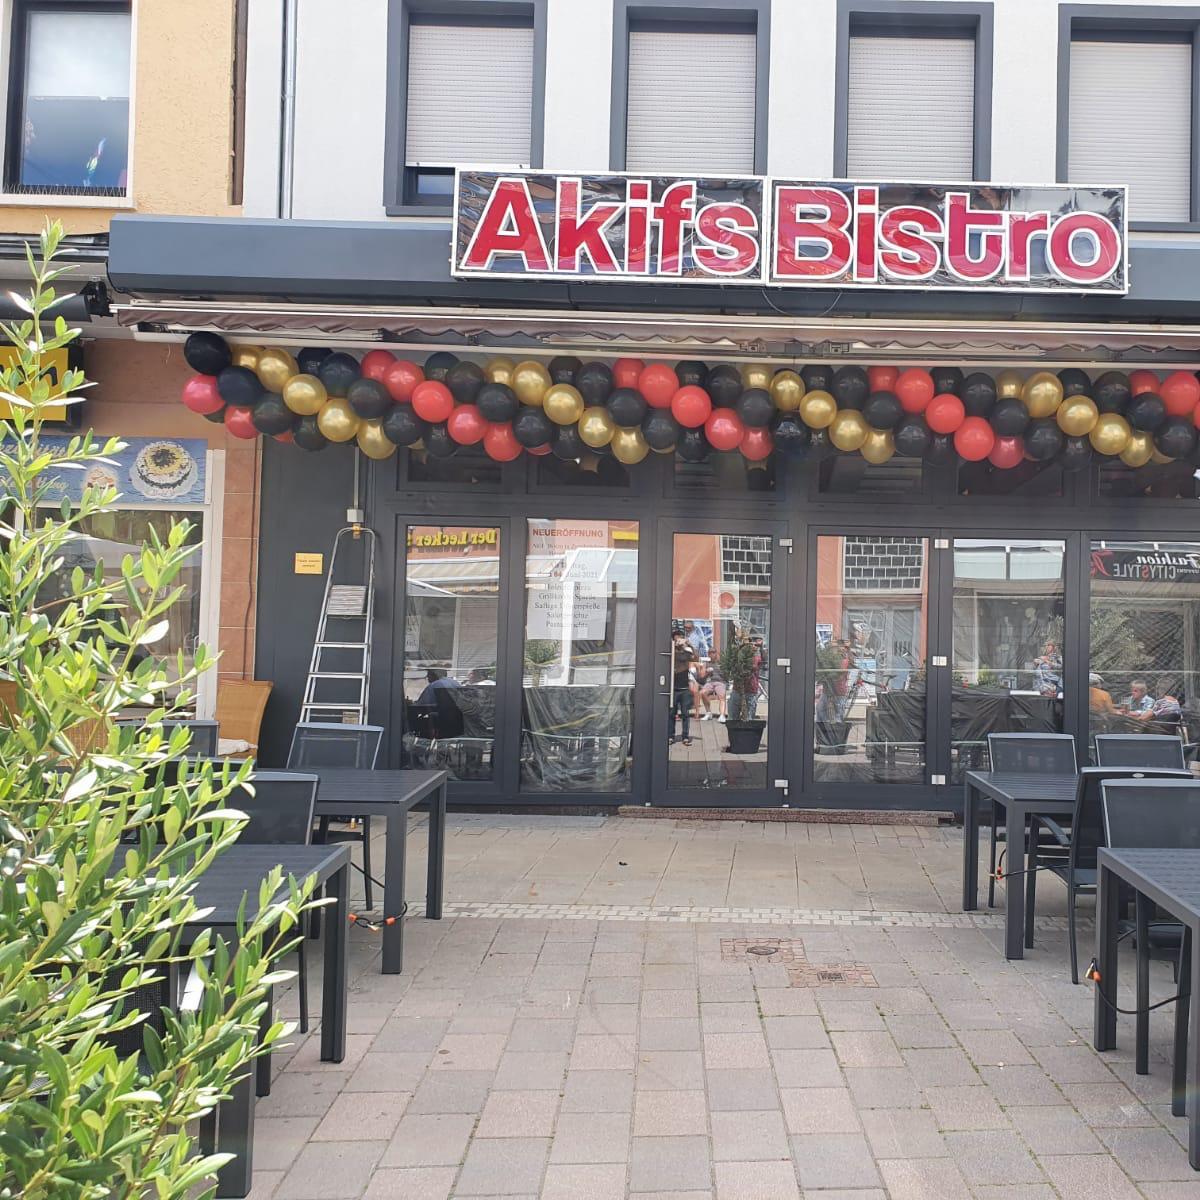 Restaurant "Akifs Bistro" in Zweibrücken